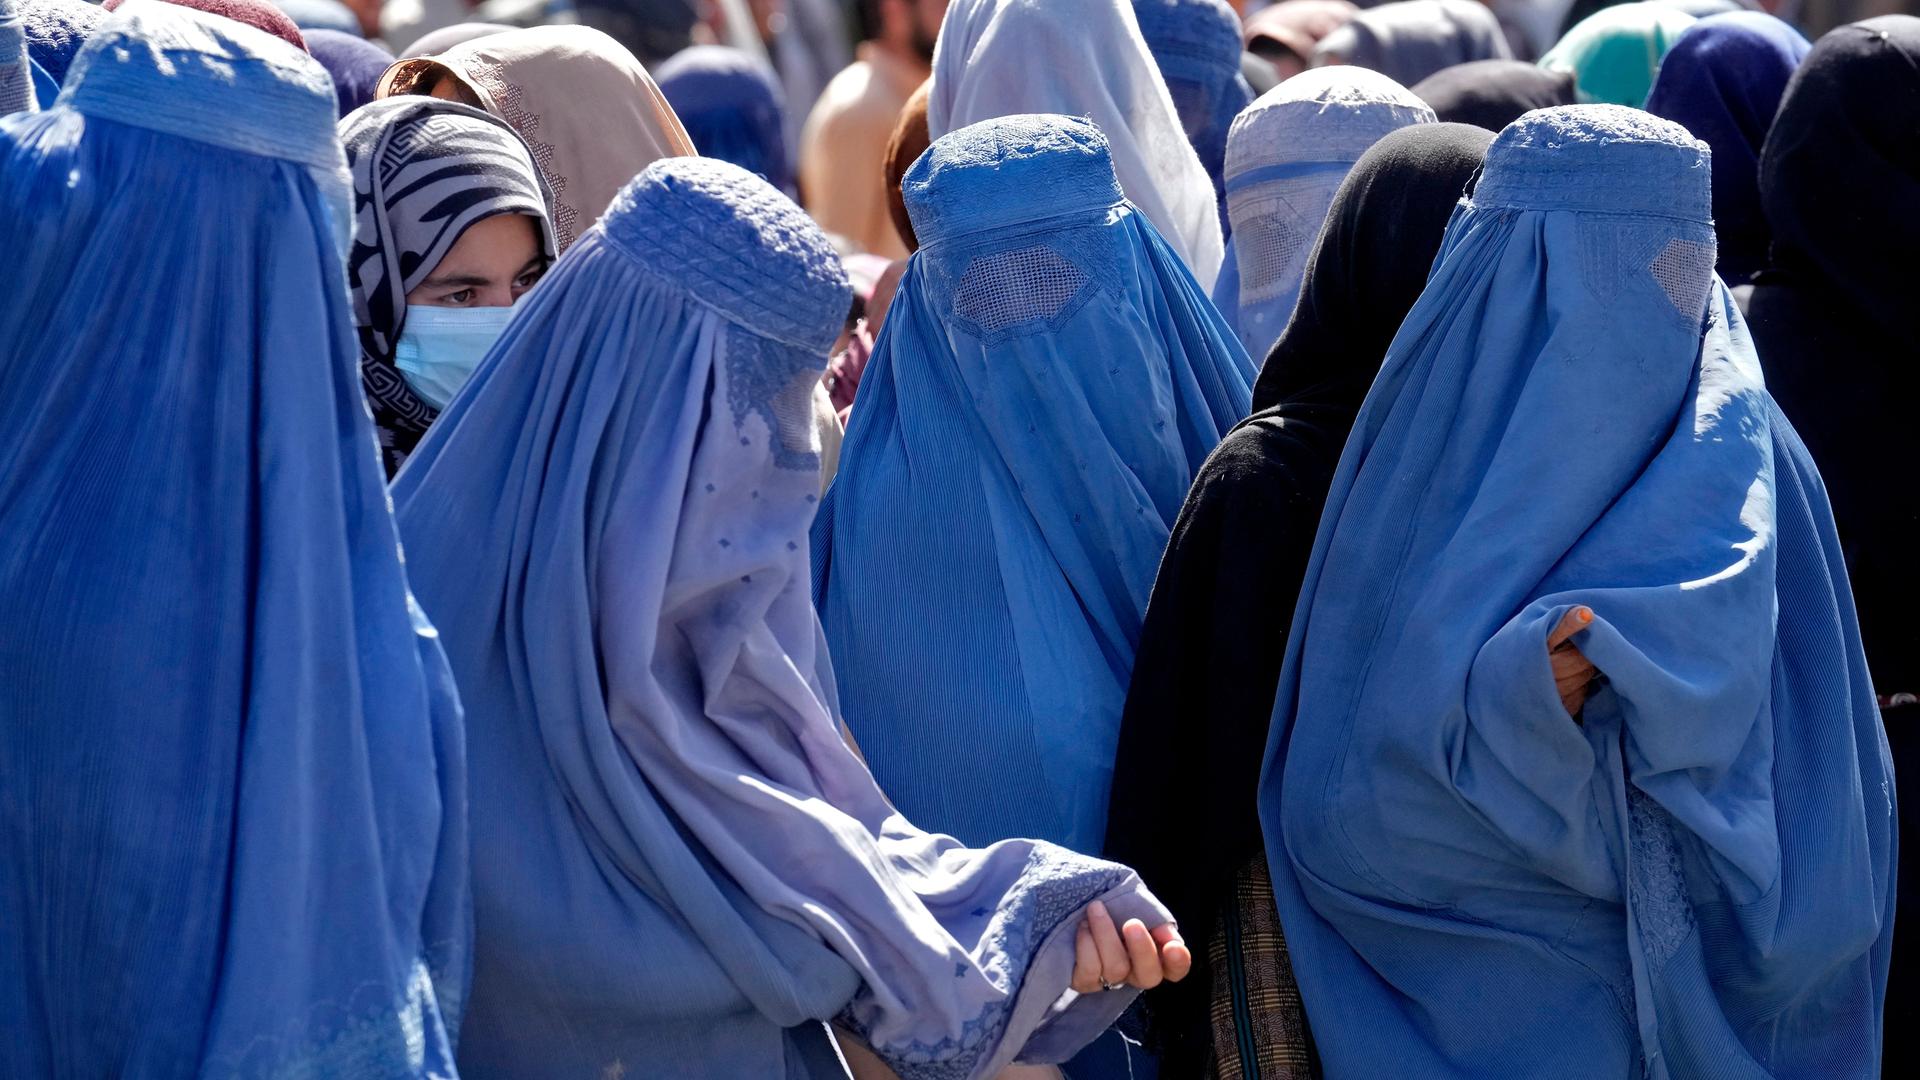 Frauen in blauen Burkas stehen in einer Schlange.